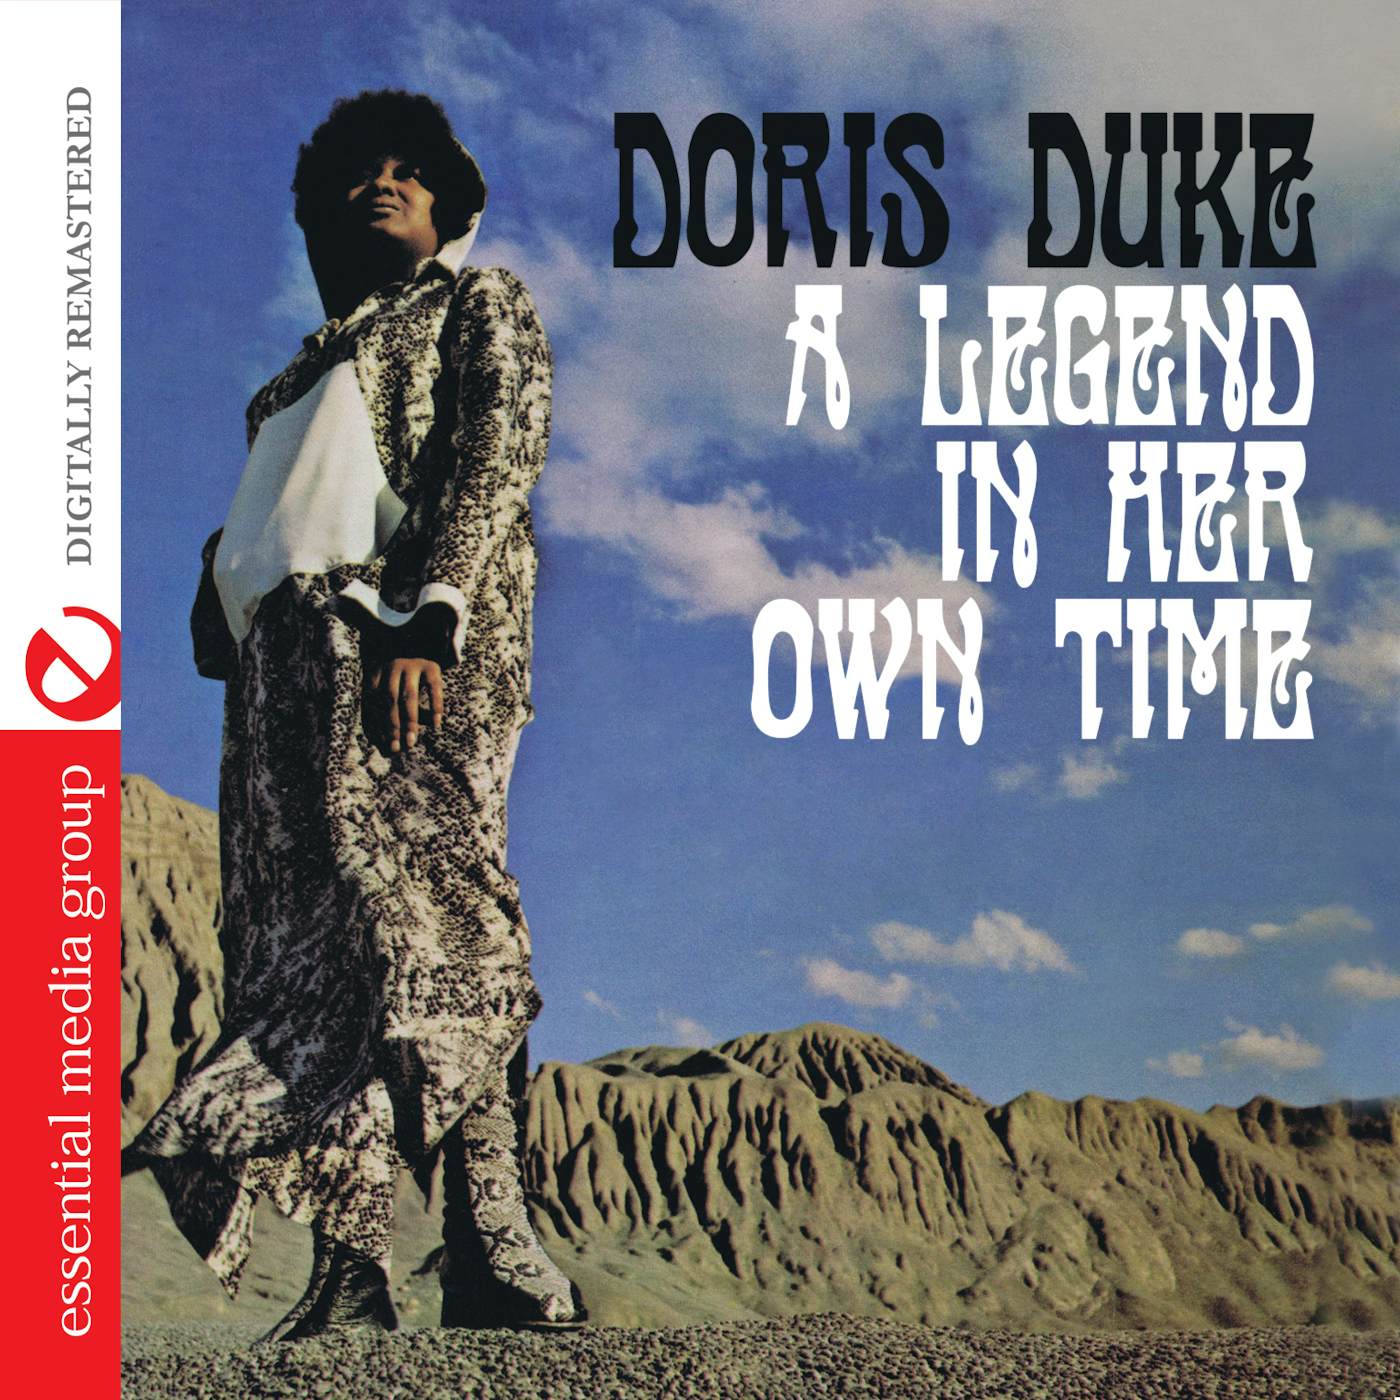 Doris Duke LEGEND IN HER OWN TIME CD